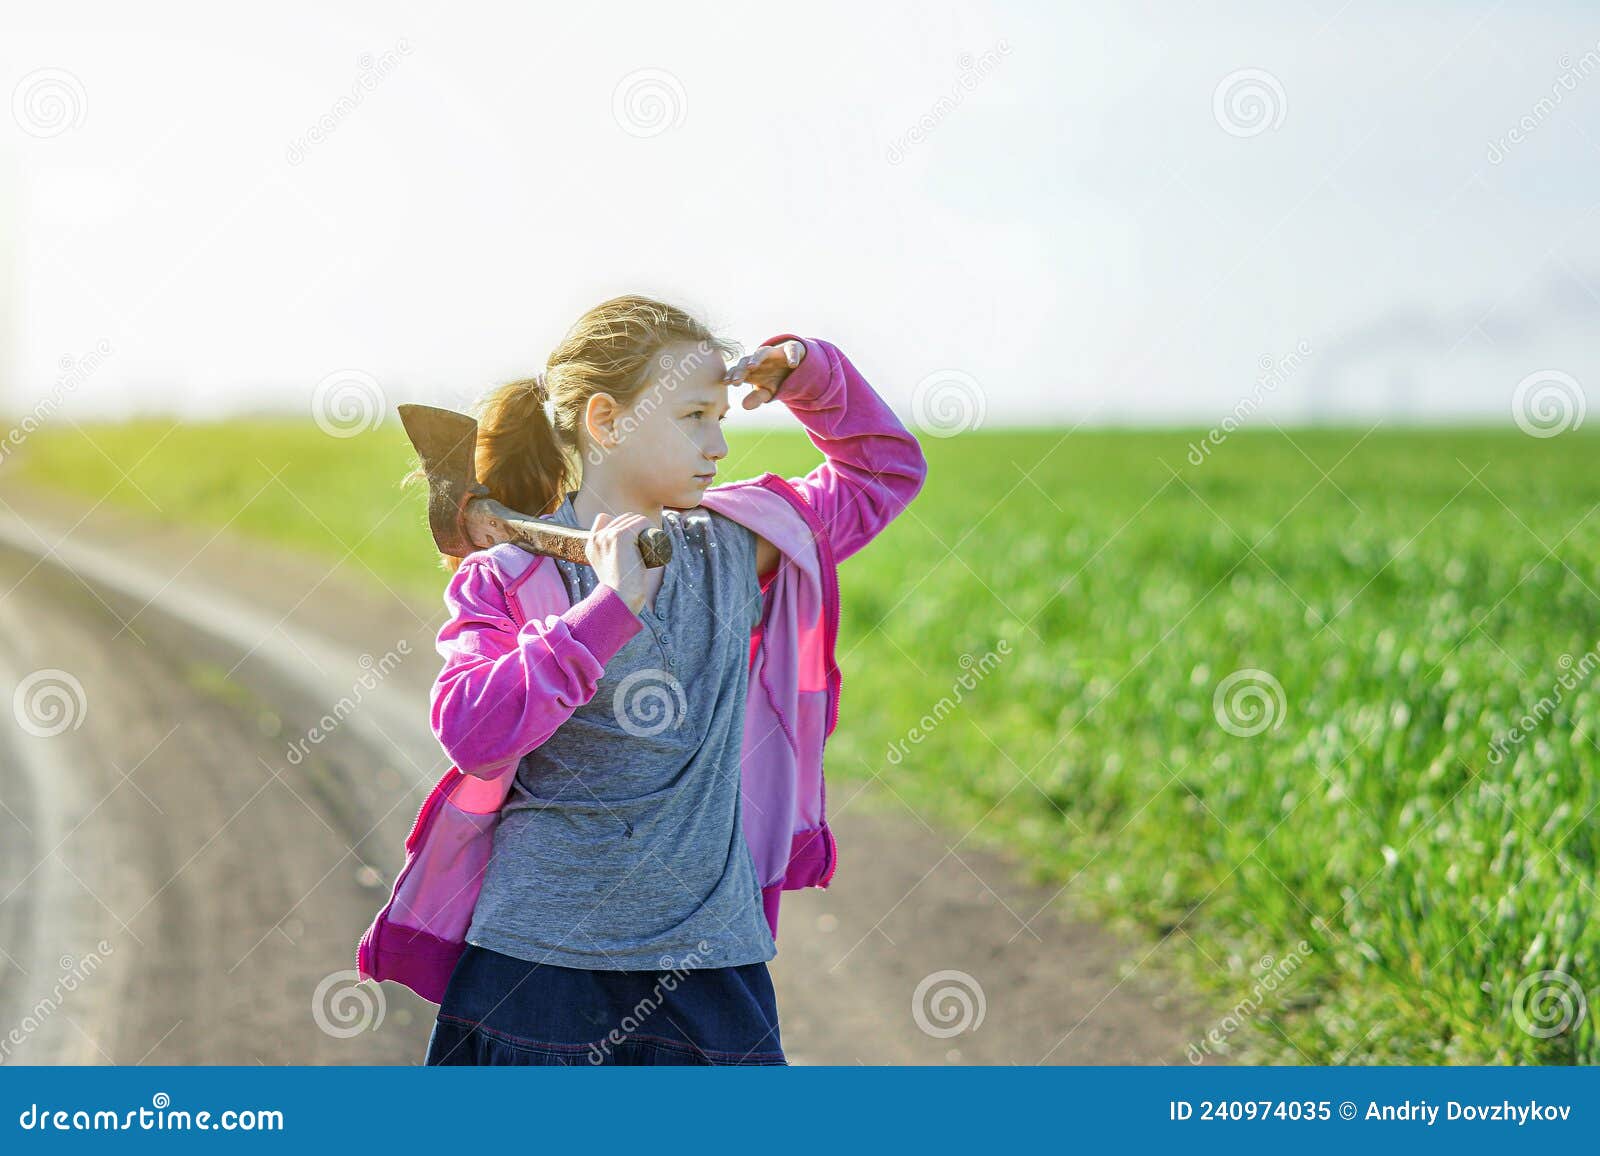 Девушка с топором на плече на фоне зелёного поля закрывает глаза от солнца и смотрит вперед Стоковое Изображение - изображение насчитывающей лесоруб, счастье: 240974035